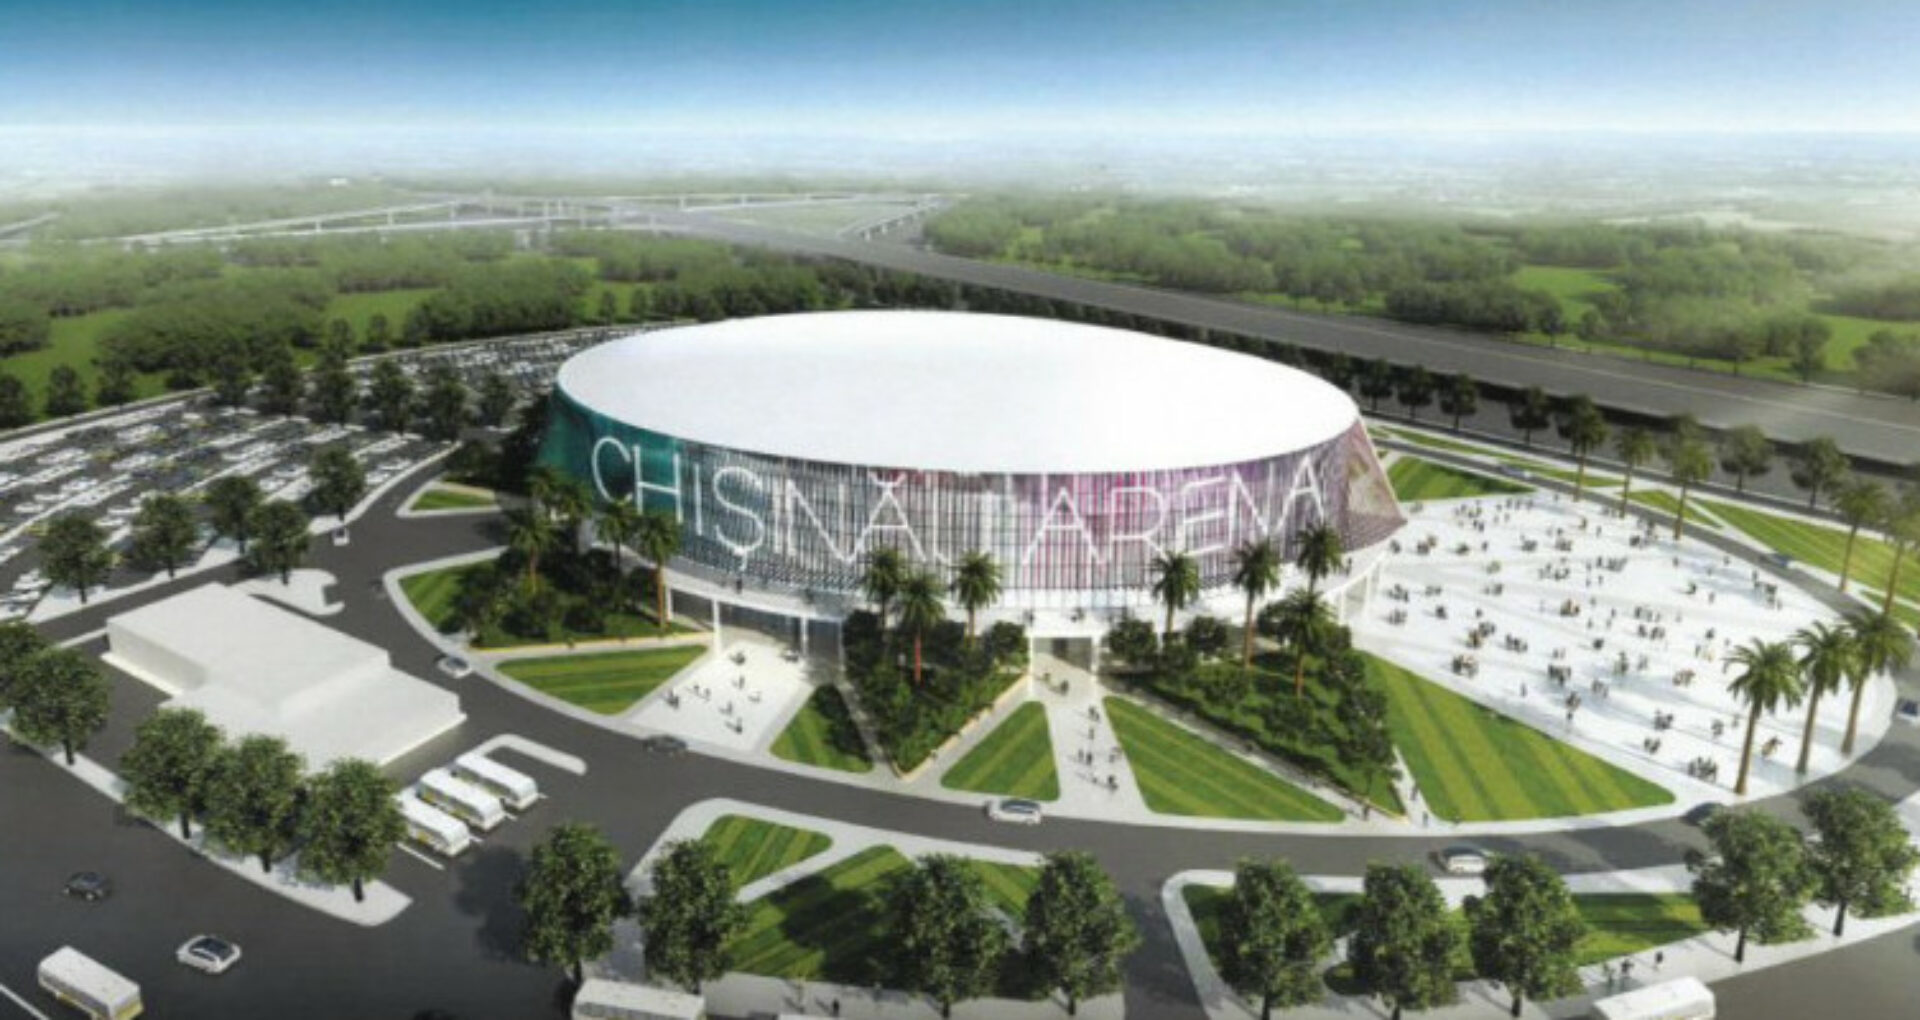 Arena Chișinău Project – Financial Irregularities